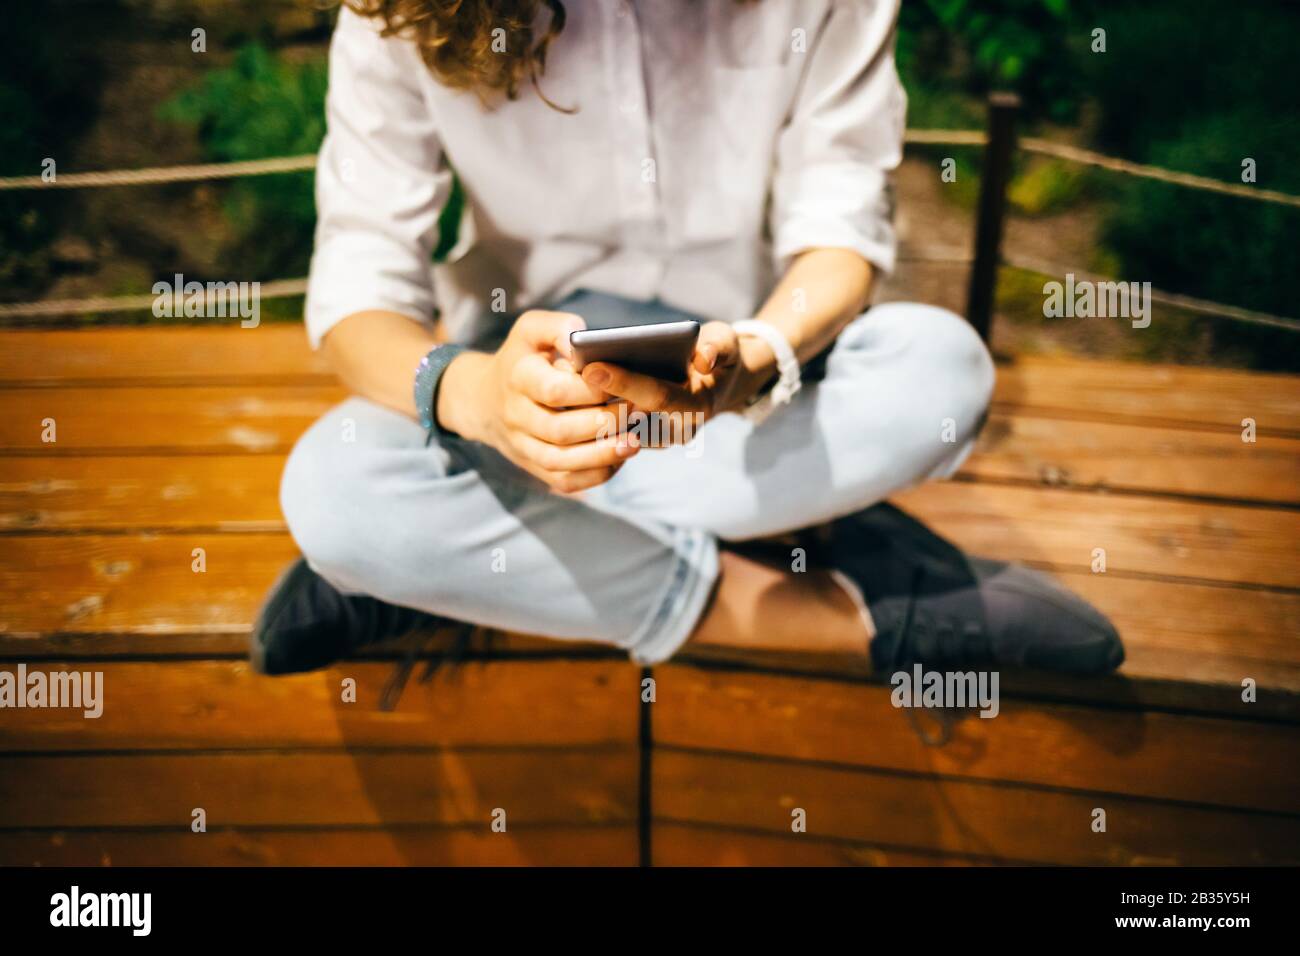 Jeune femme assise détendue sur un banc en bois avec ses jambes croisées tenant l'appareil mobile dans ses mains regardant l'écran. Fille utilisant smartphone été Banque D'Images